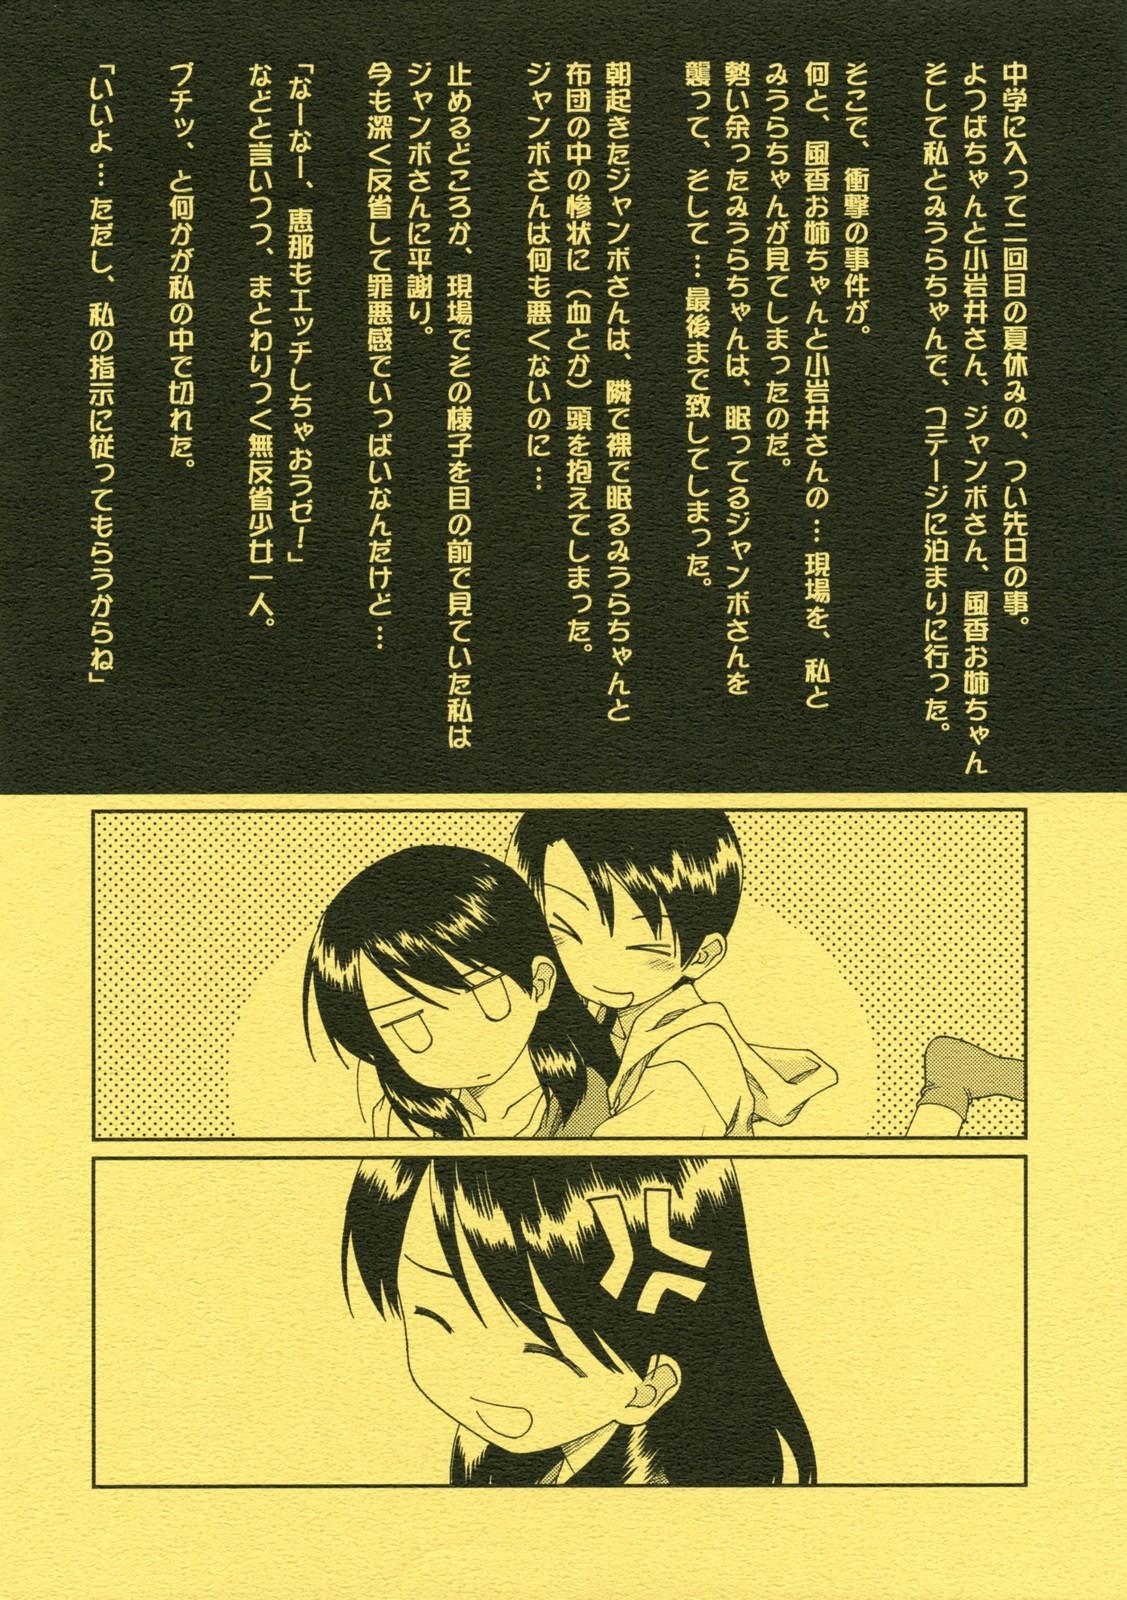 Spreadeagle Miurato - Yotsubato Gaygroup - Page 2